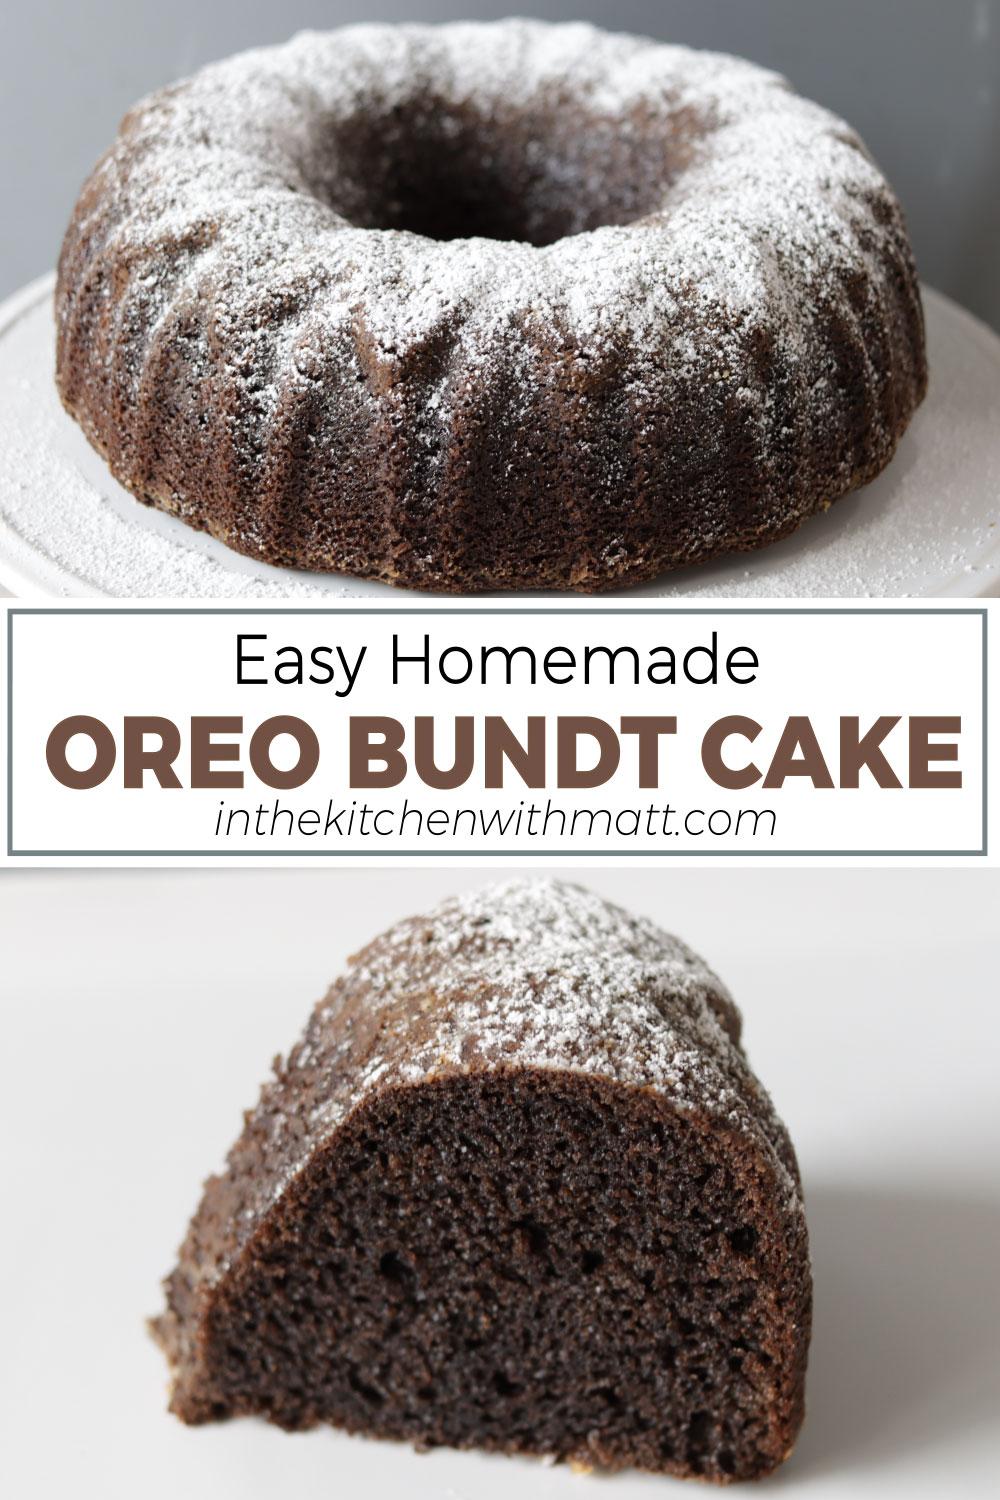 Easy Homemade Oreo Bundt Cake Pin Hi Res.jpg